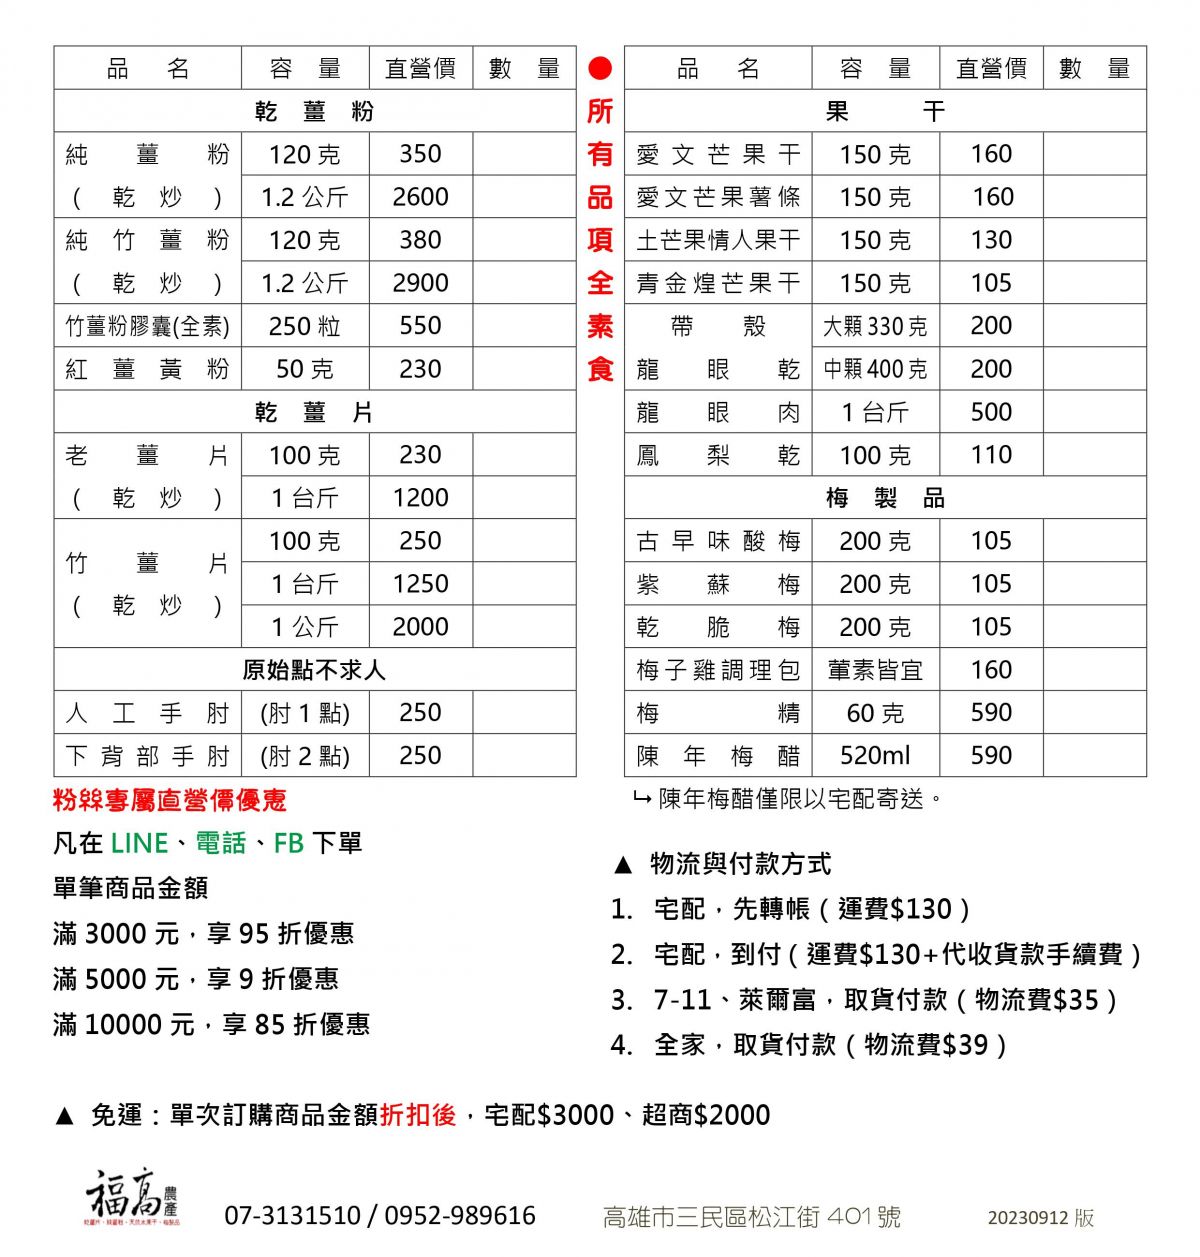 FuKaoPriceList 福高農產 價目表 目錄 DM Menu 20230912版